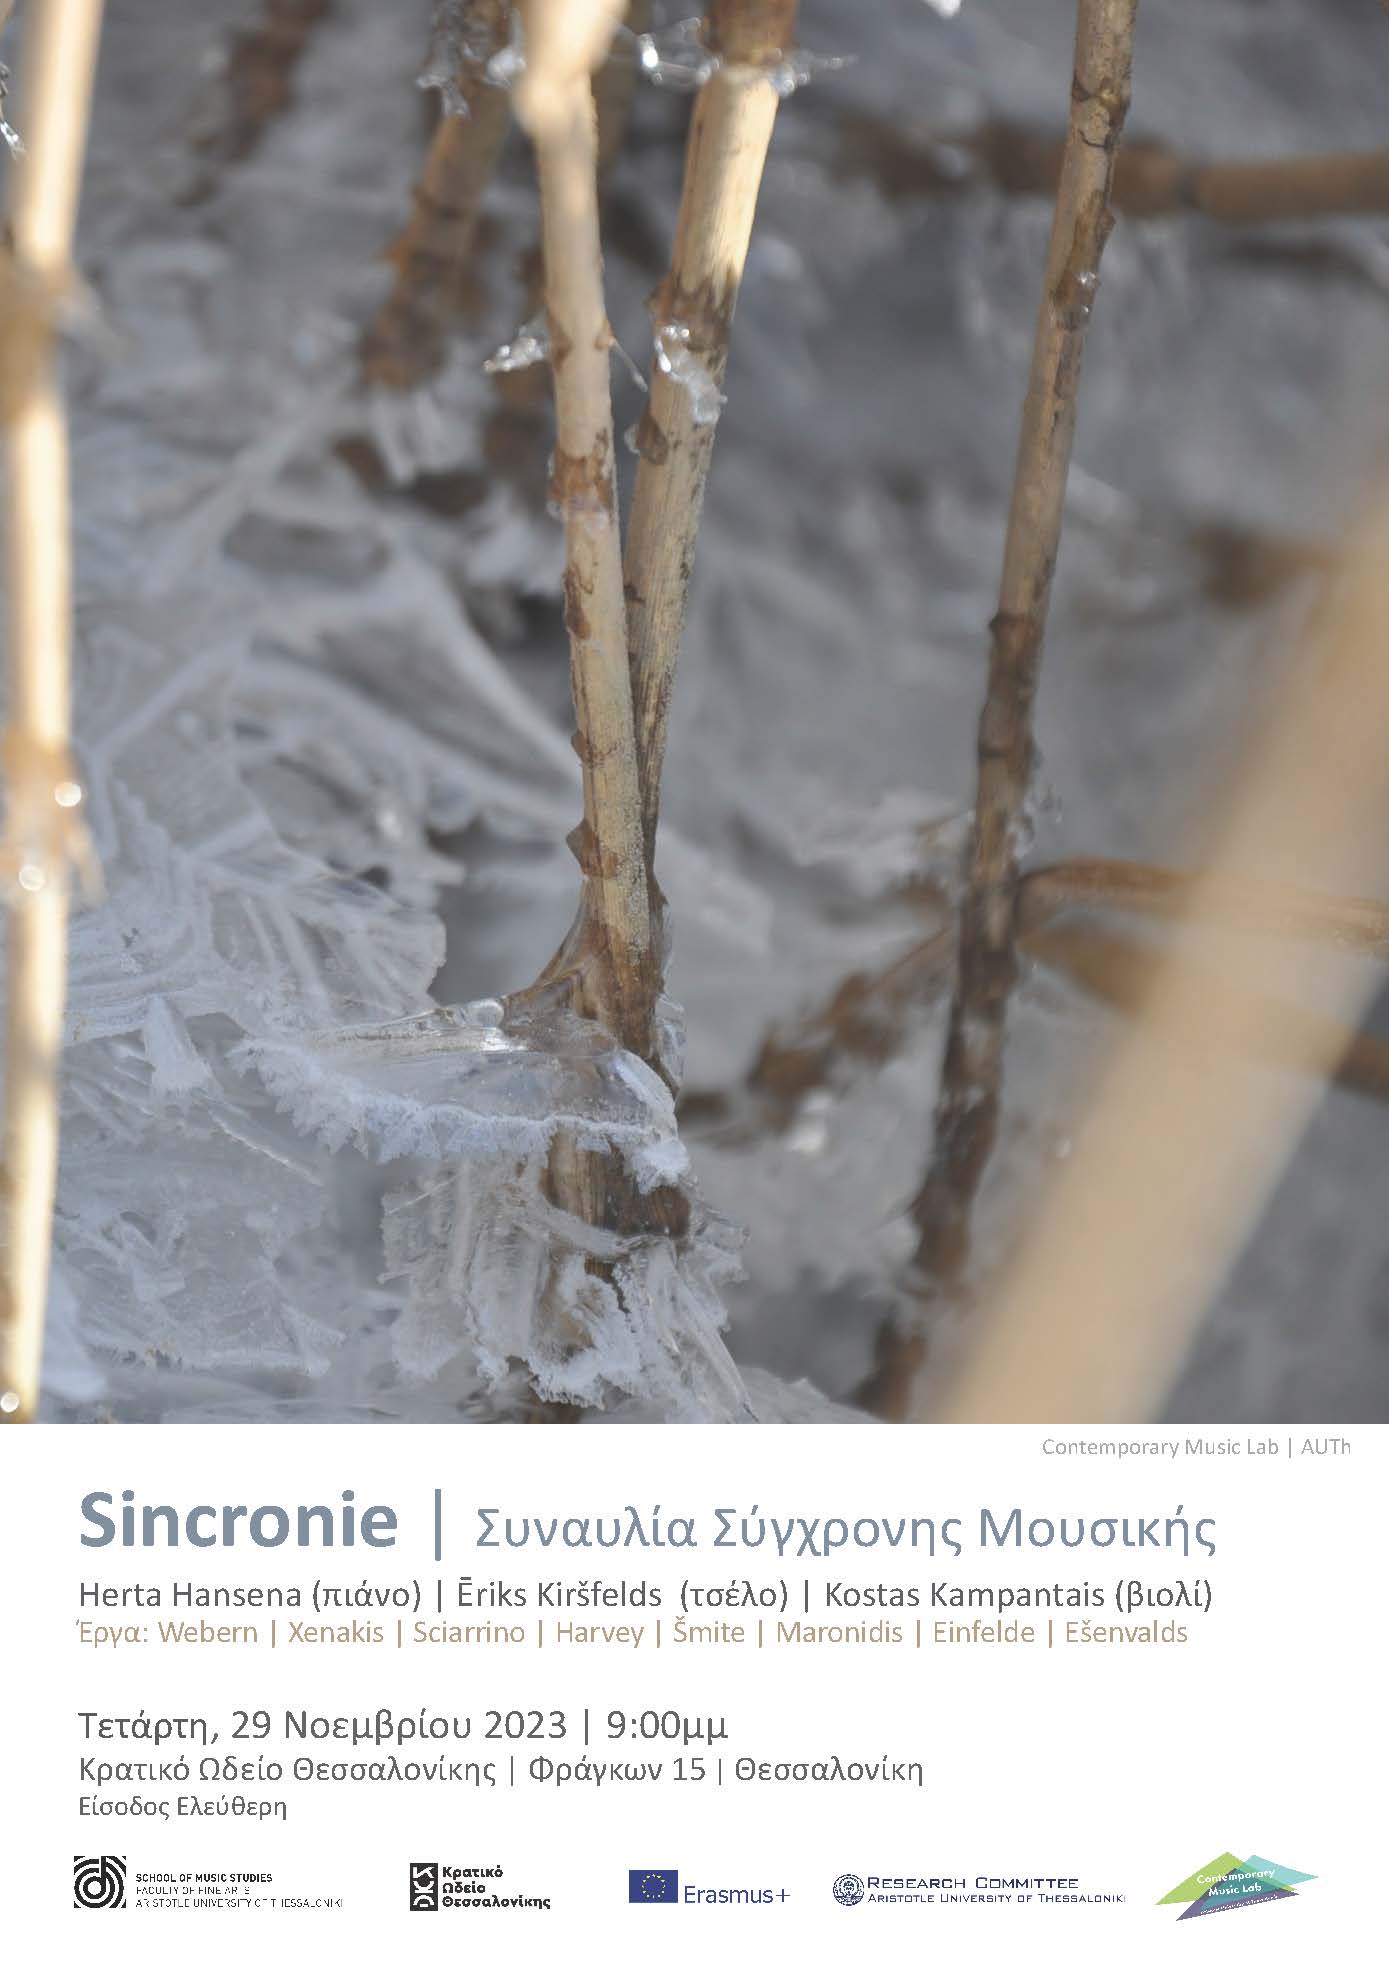 SINCRONIE - Συναυλία Σύγχρονης Μουσικής έργα του 20ου & 21ου αιώνα για πιάνο, βιολοντσέλο & βιολί